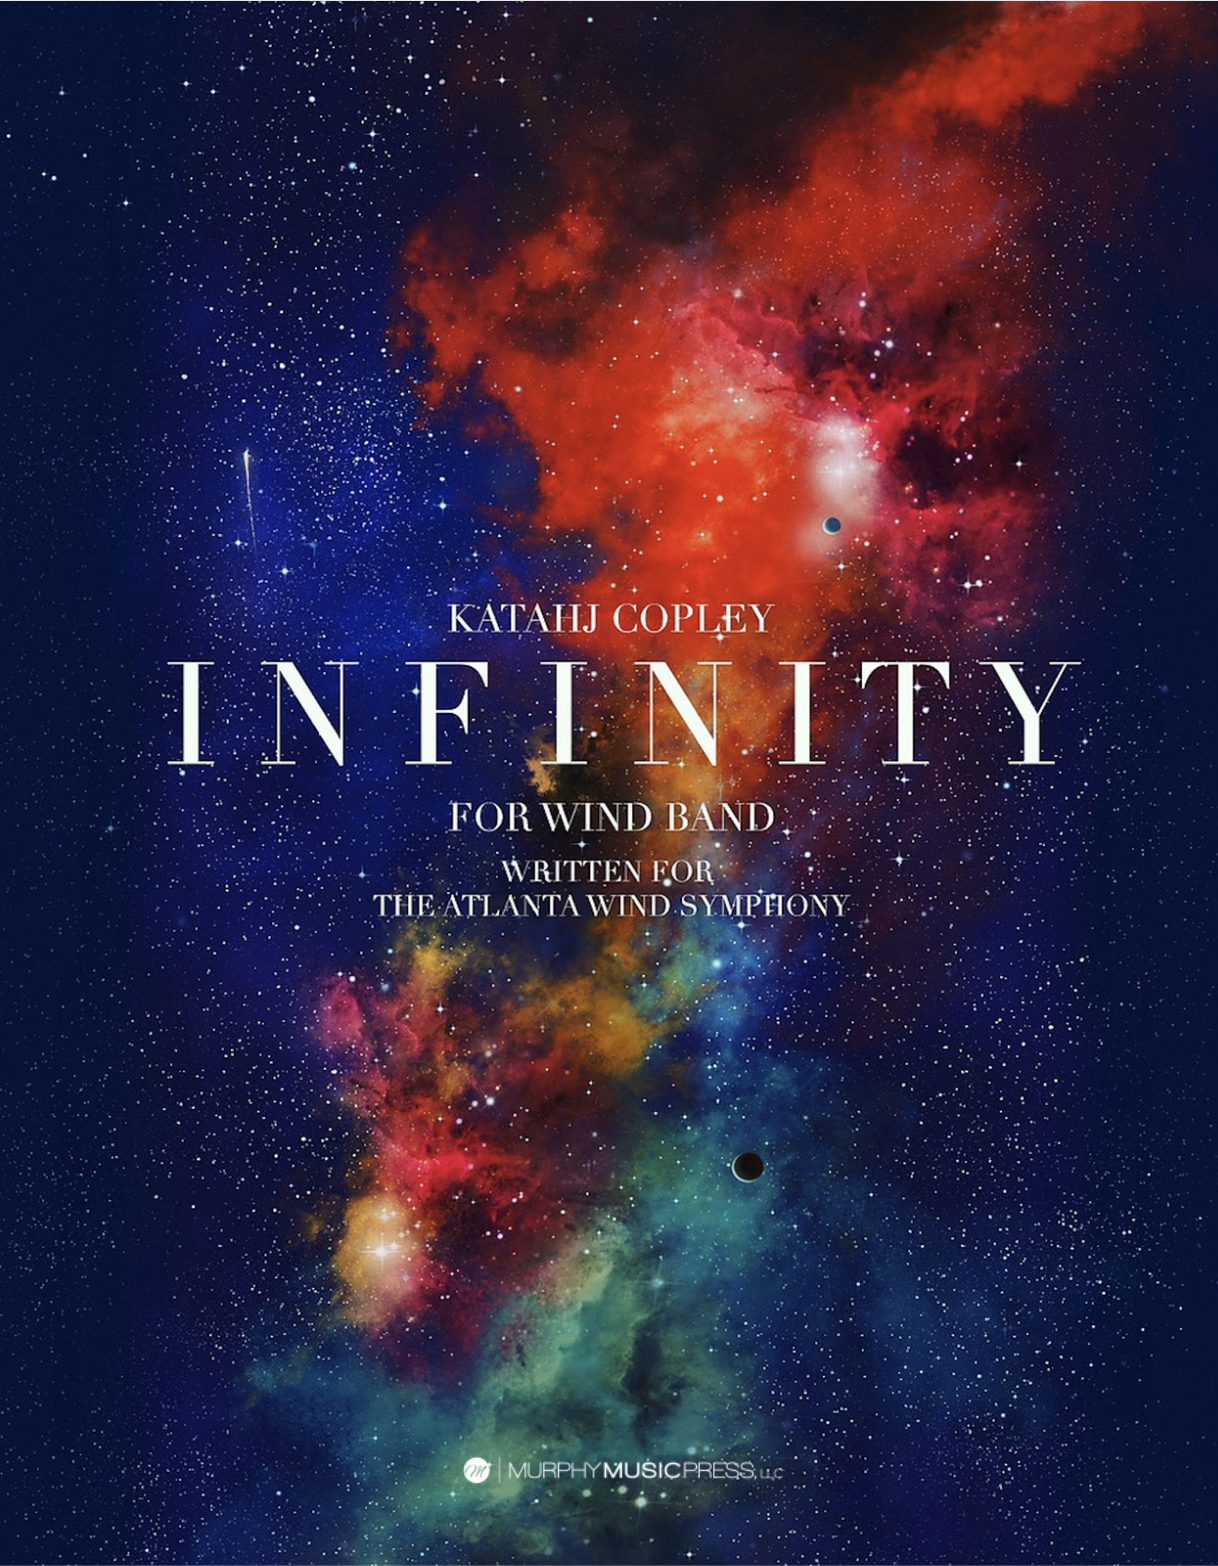 Infinity by Katahj Copley